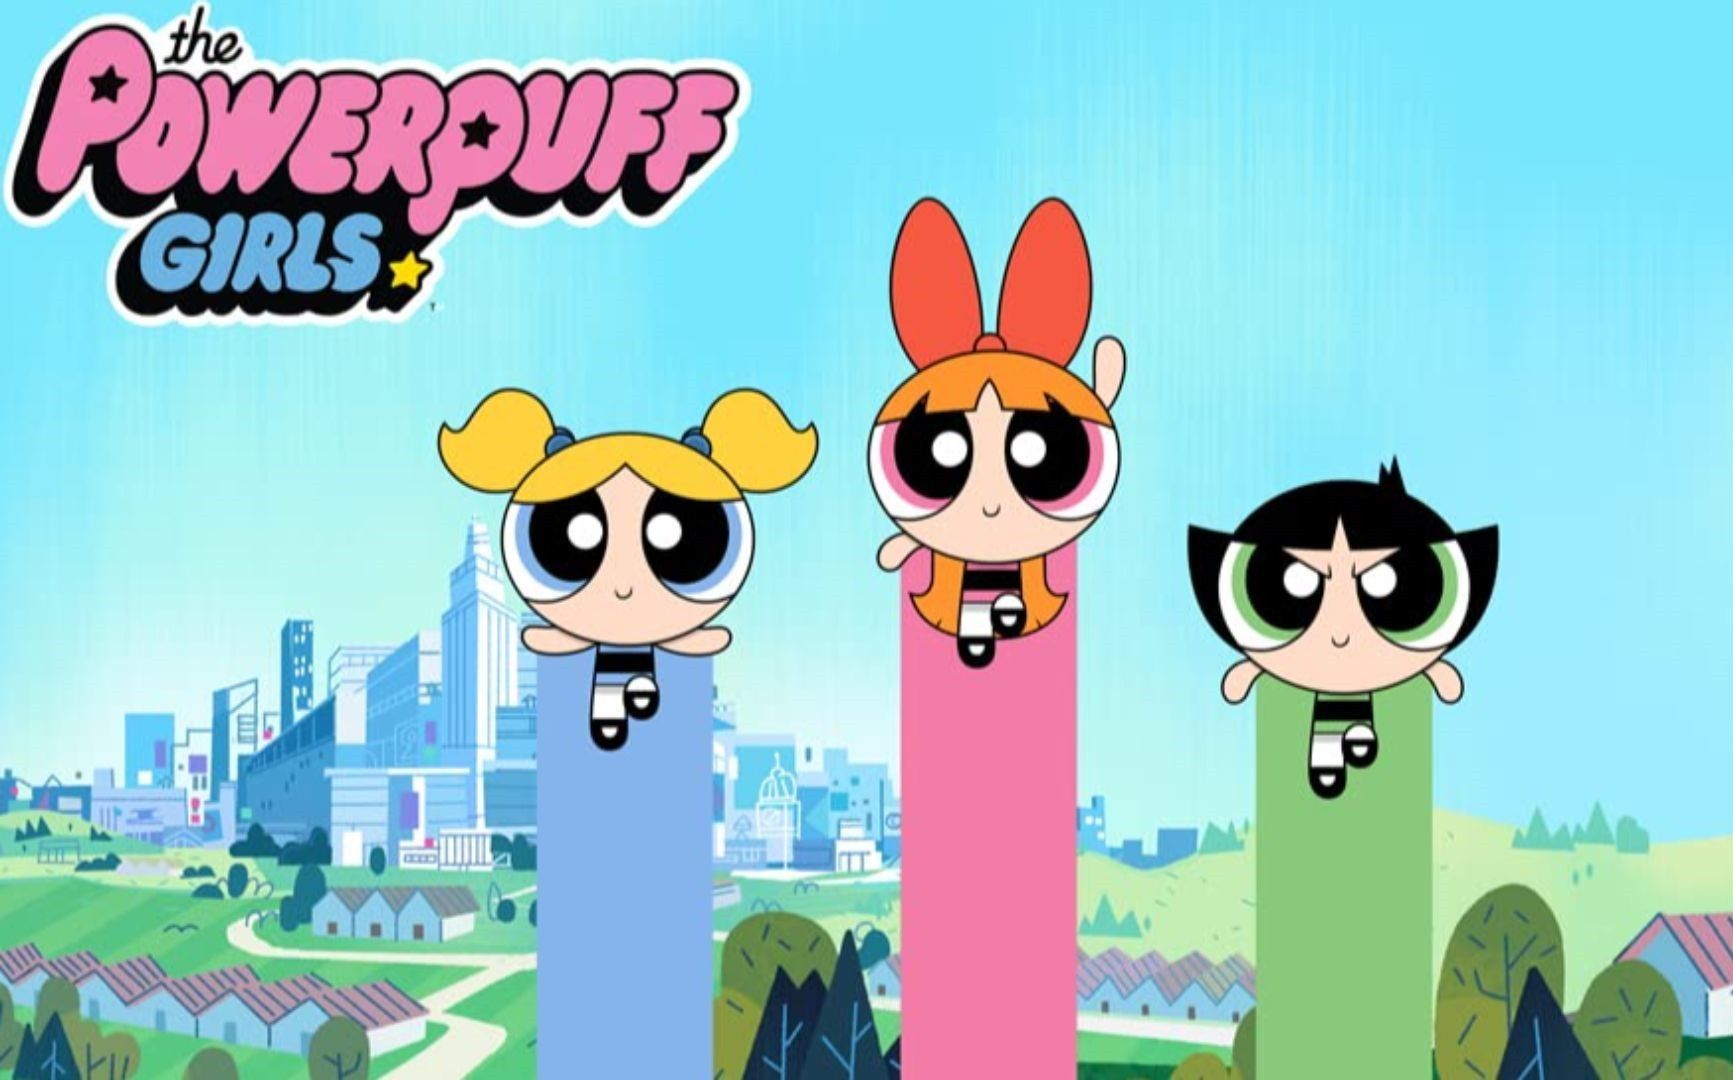 The Powerpuff Girls' creator to reboot animated series 